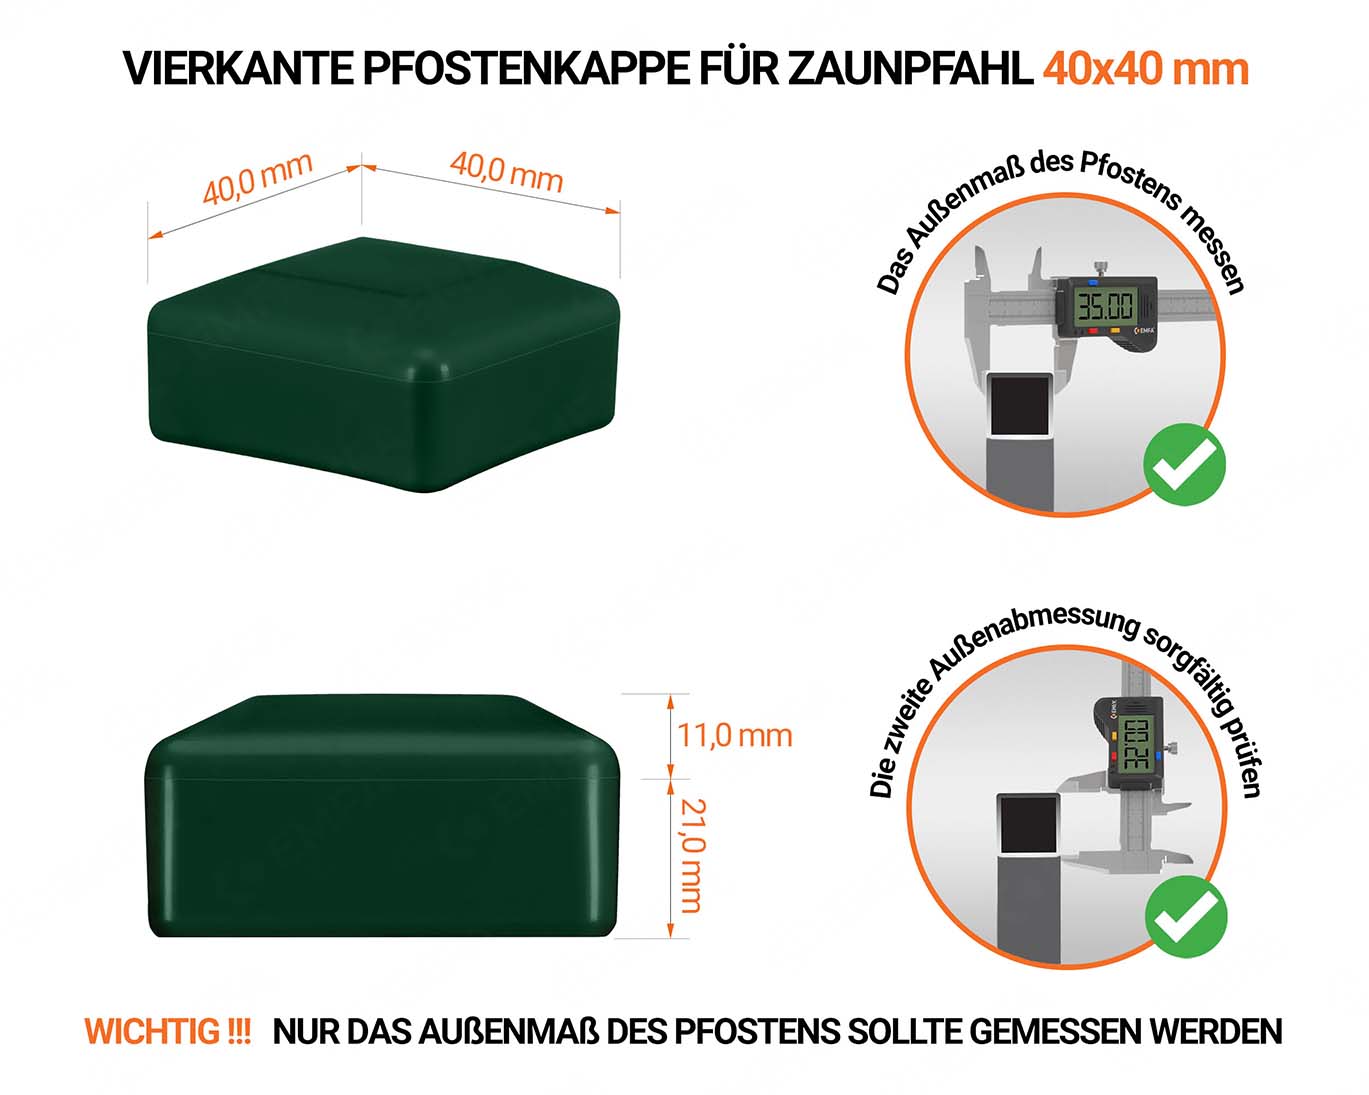 Grüne Pfostenkappen vierkant für Pfostenmaße 40x40 mm  mit technischen Abmessungen und Anleitung für korrekte Messung